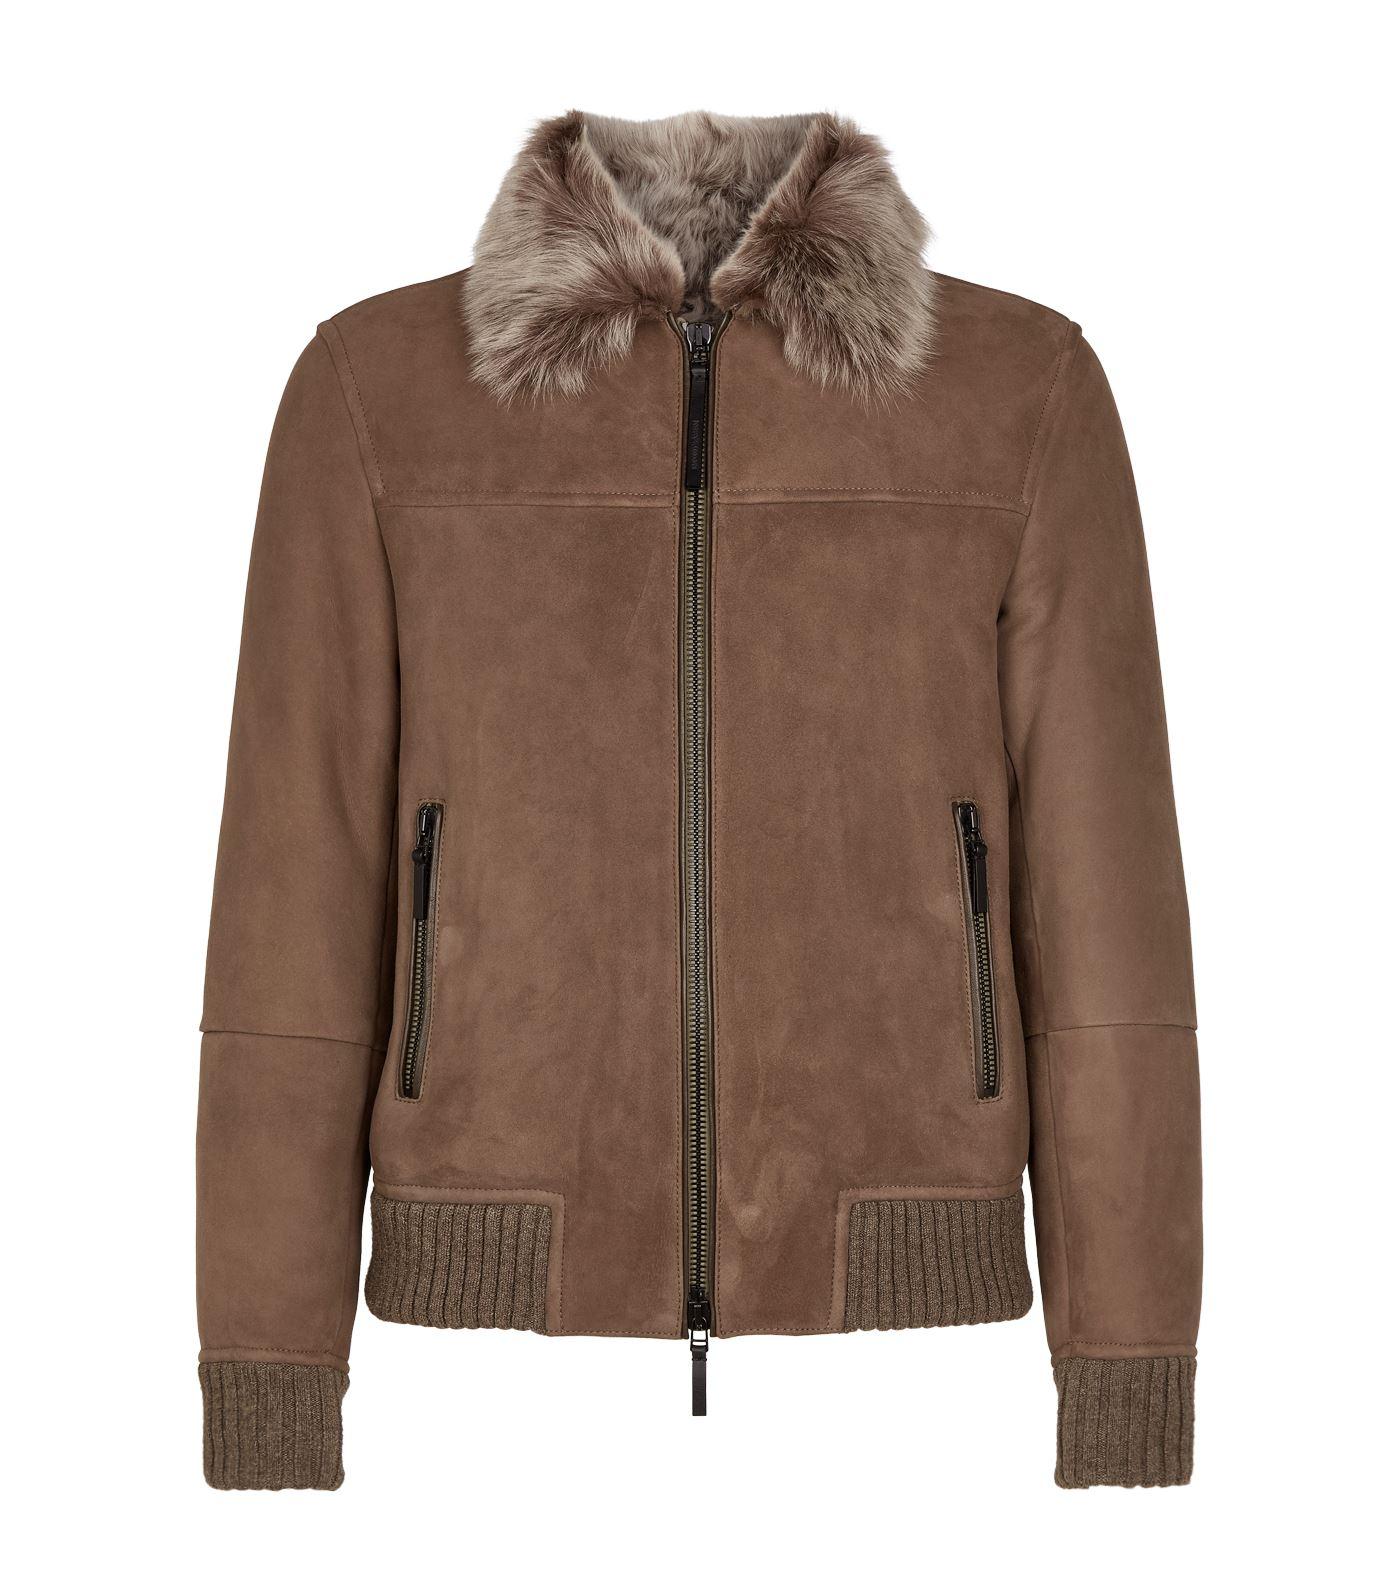 emporio armani brown suede jacket